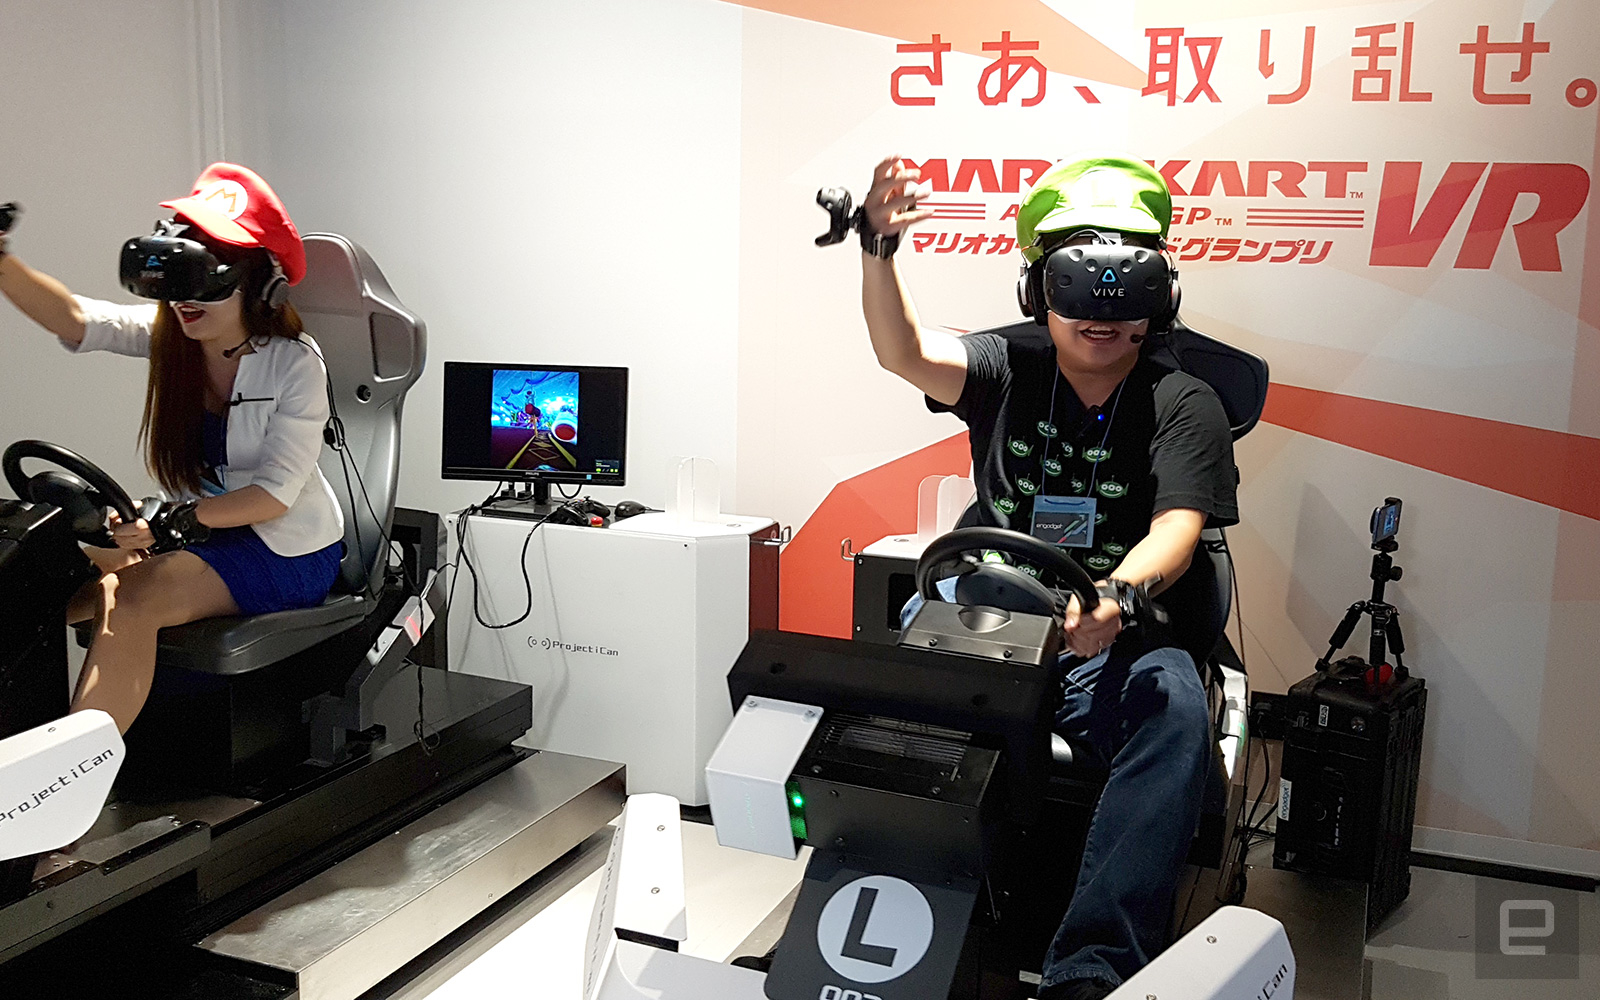 Mario Kart VR была представлена публике